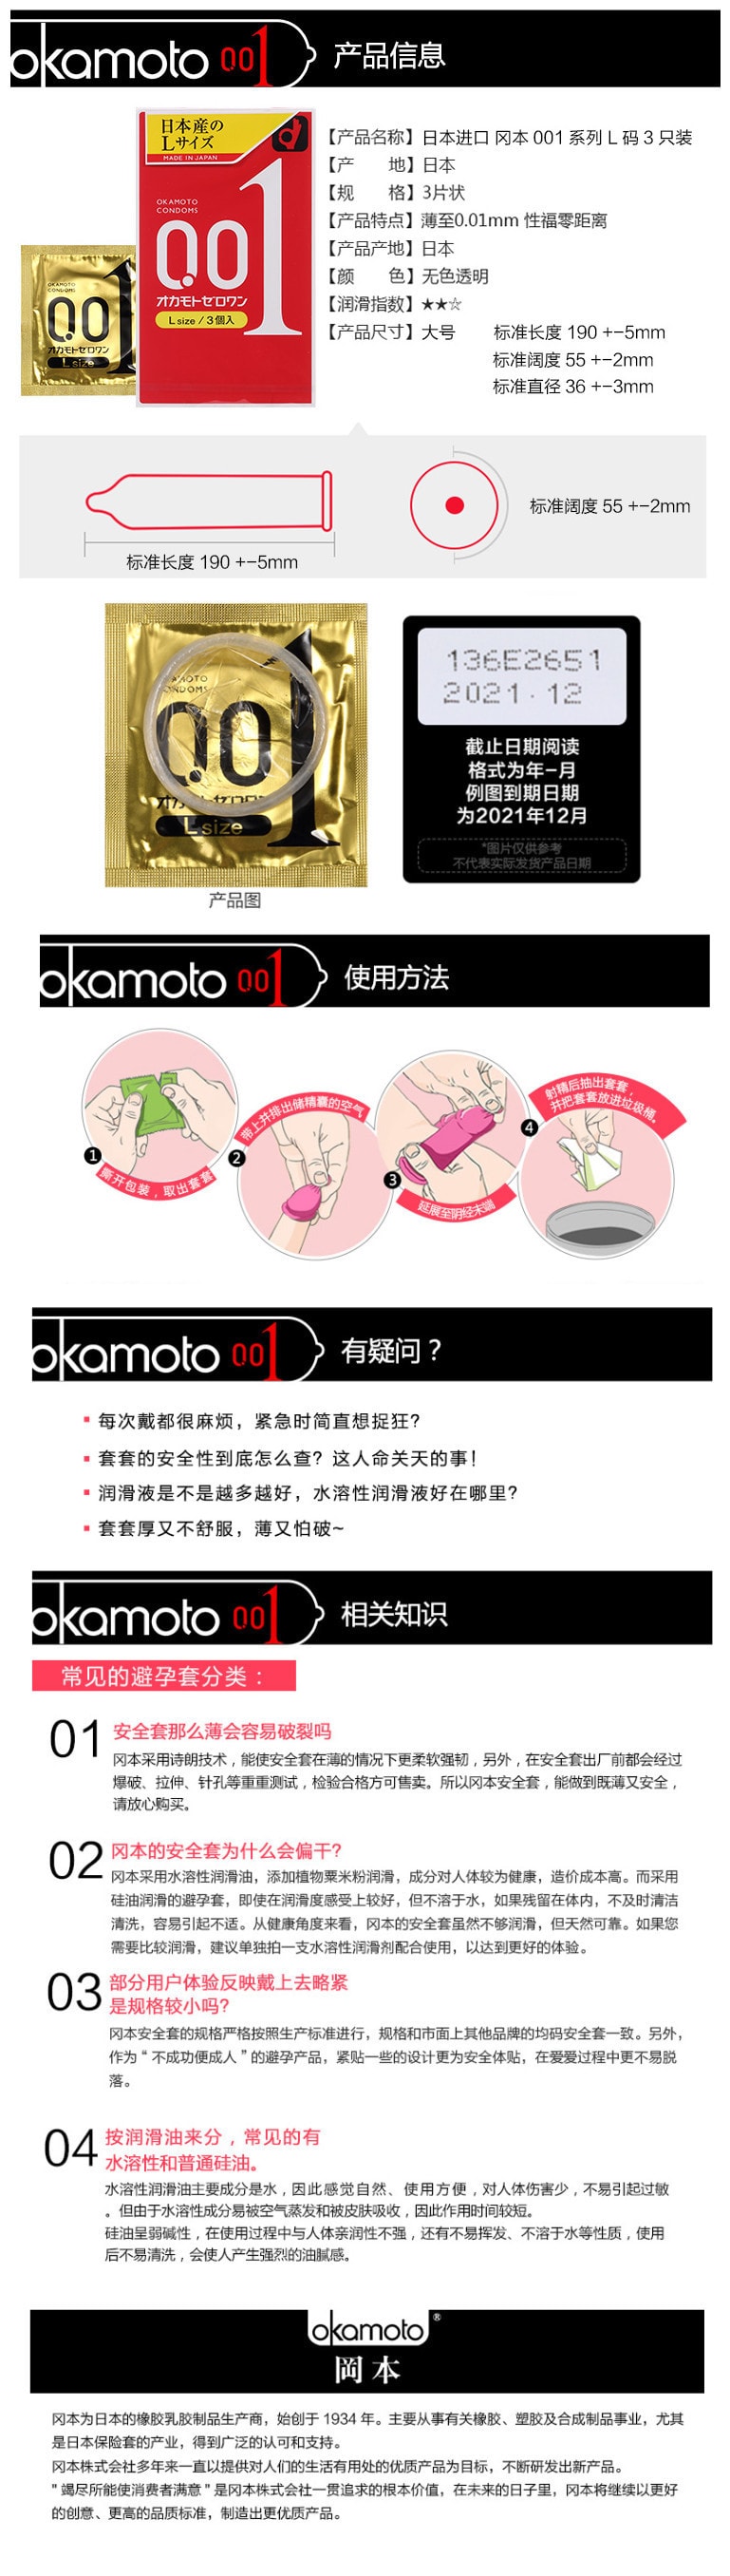 【特价回馈】【日本直邮】日本OKAMOTO 冈本 001系列 超薄安全避孕套冈本001 L码 3个入